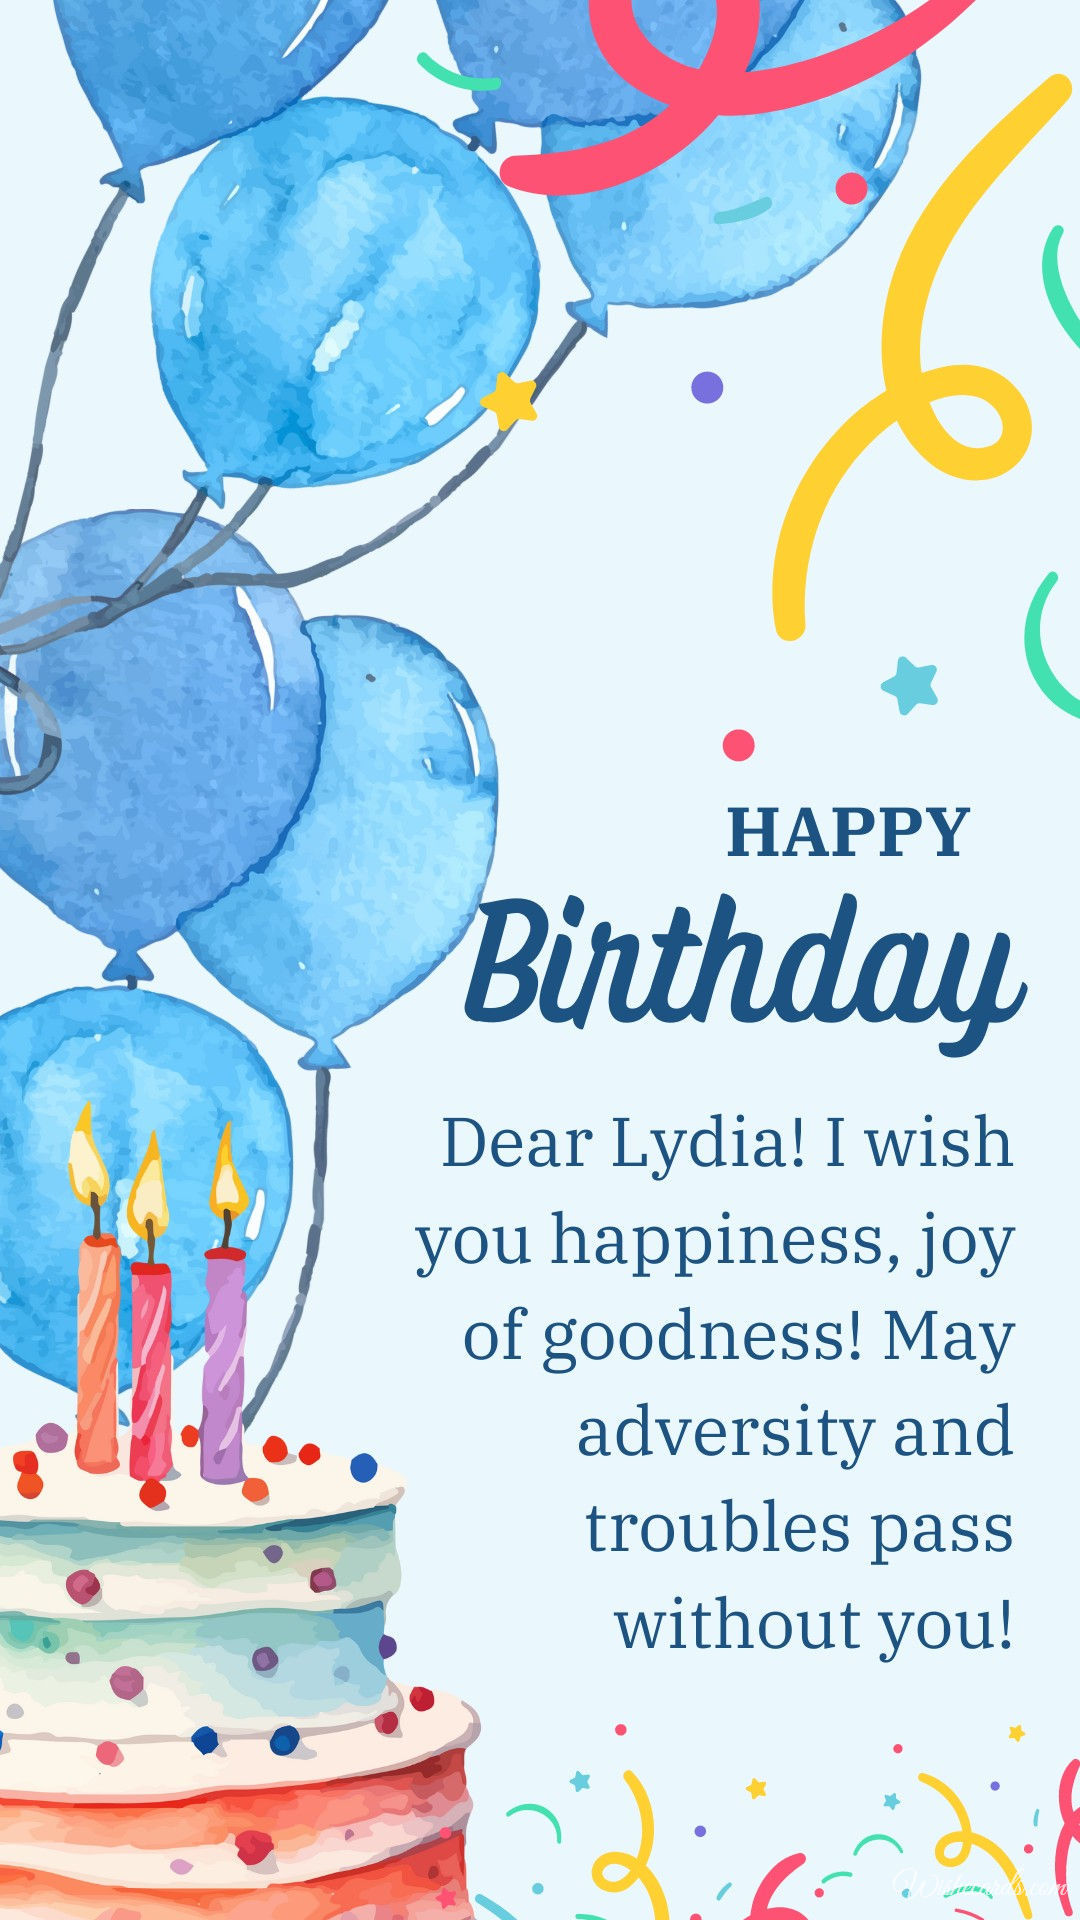 Happy Birthday to Lydia